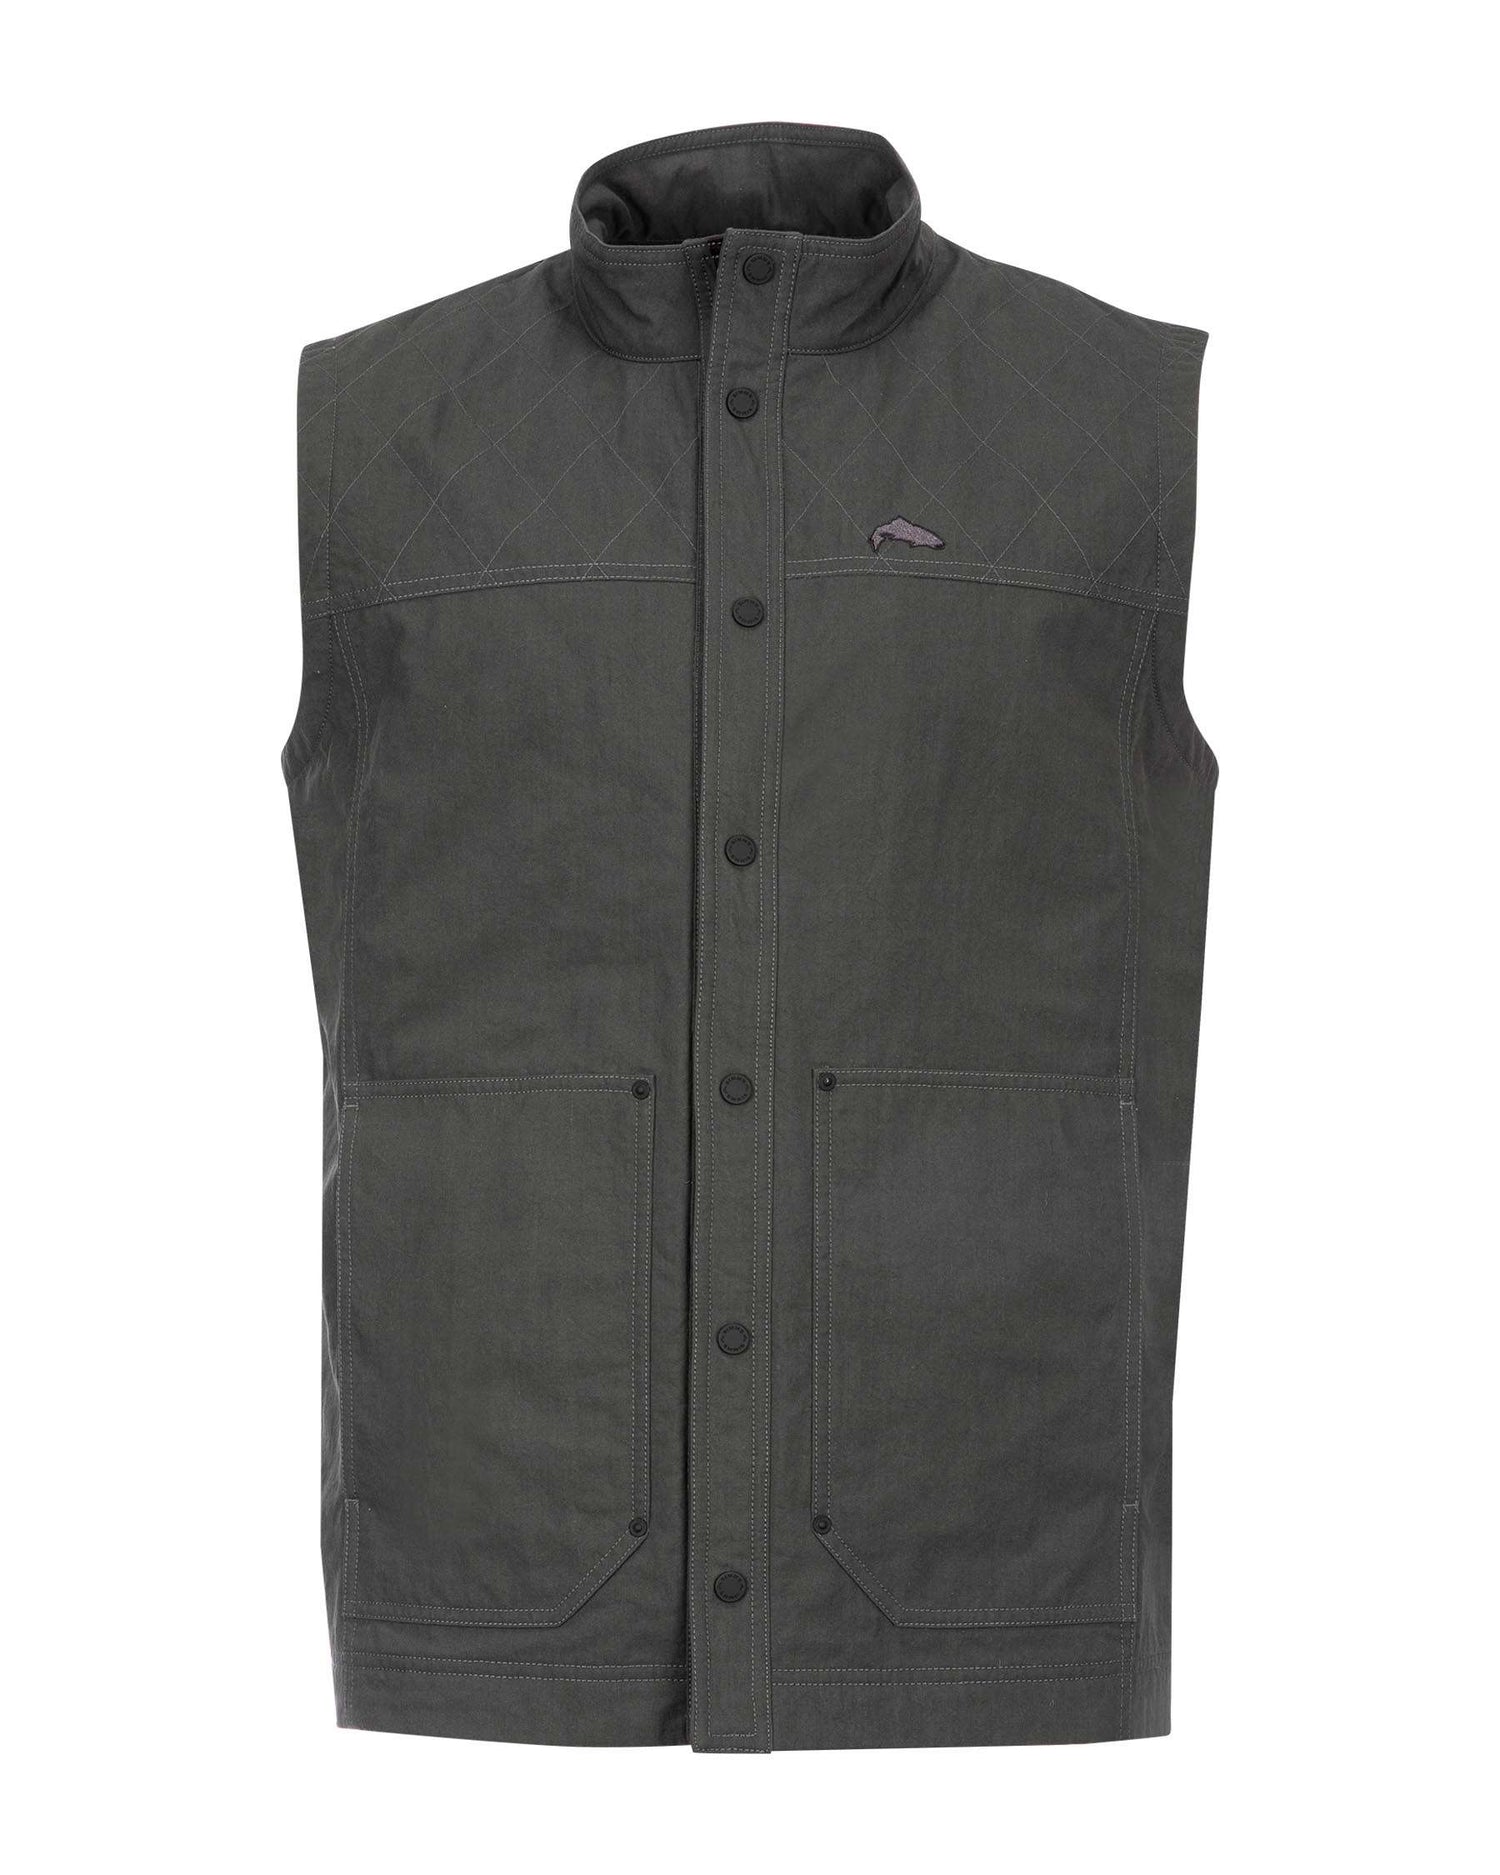 M's Dockwear Vest - Carbon